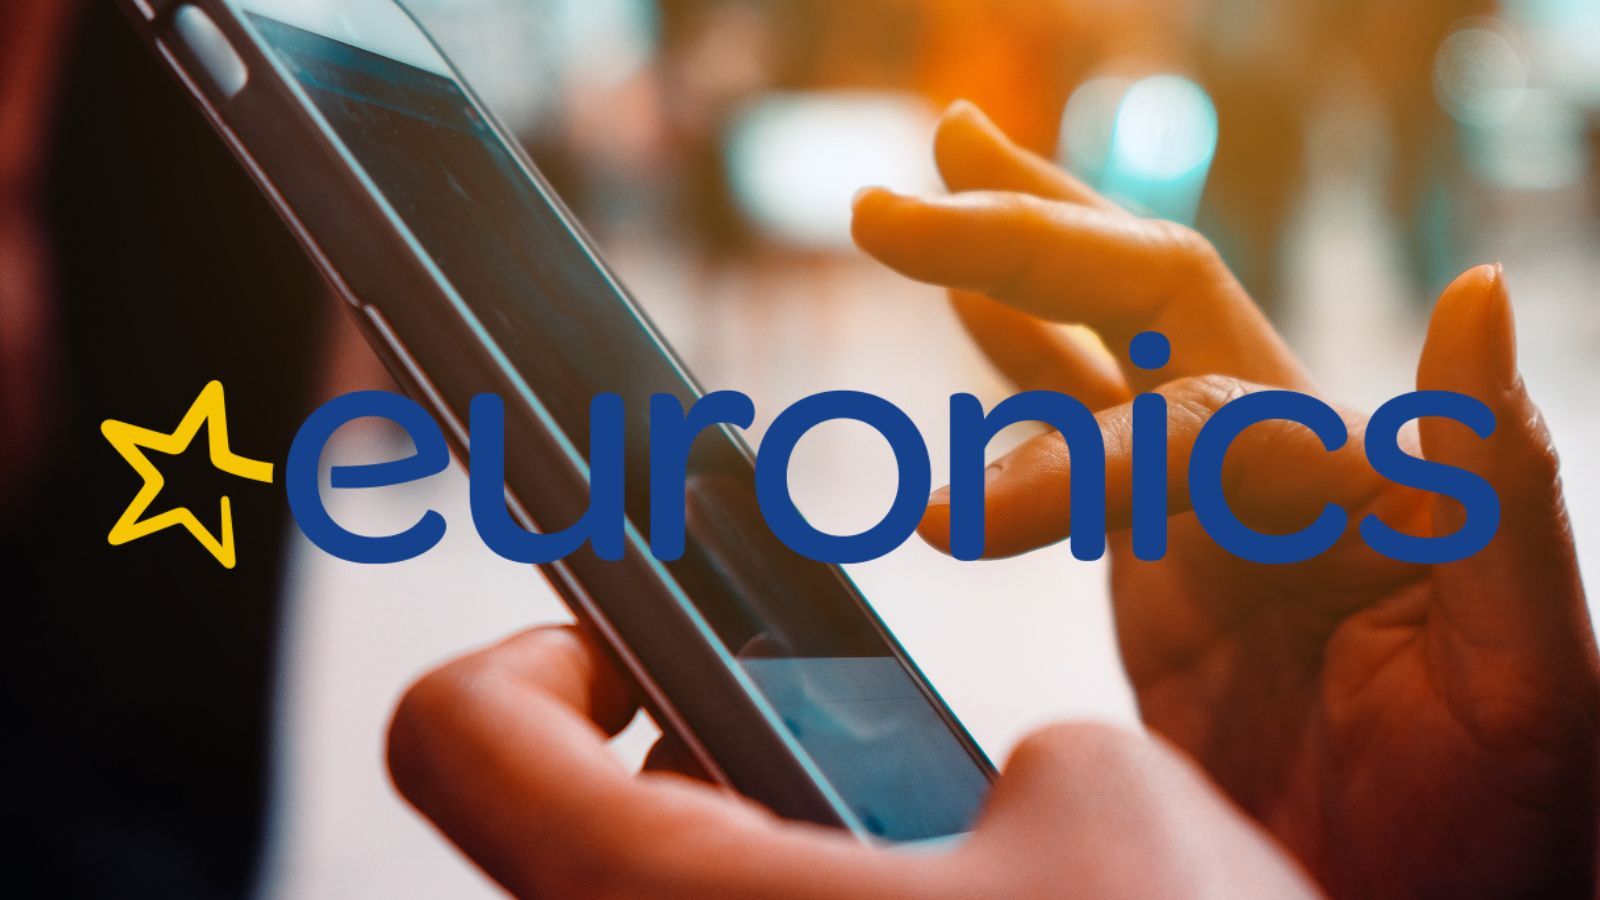 Euronics, solo oggi le offerte al 50% fanno IMPAZZIRE gli utenti